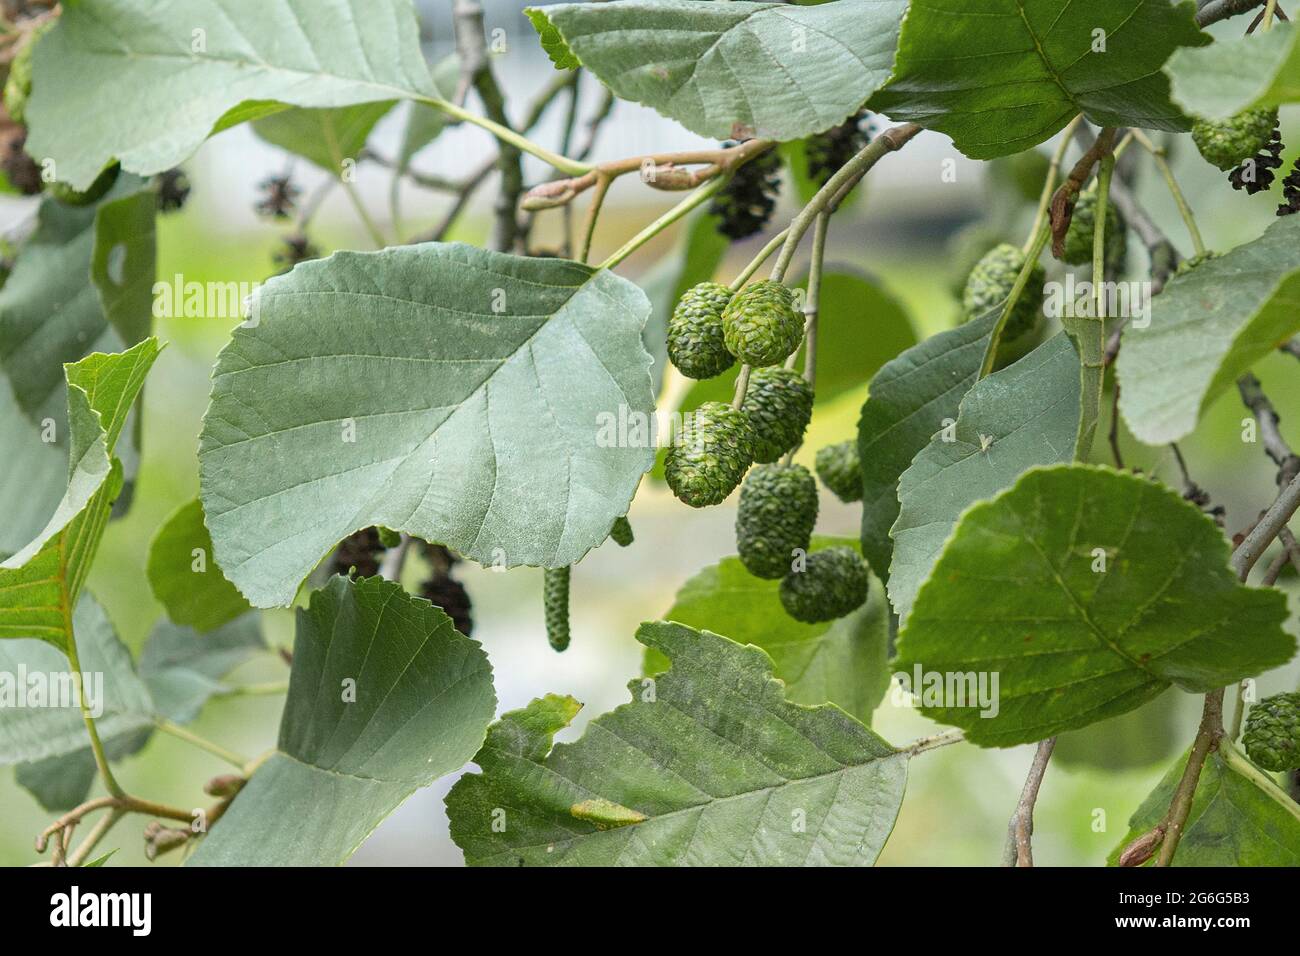 Pin noir d'Europe, l'aulne (Alnus glutinosa), de la direction générale avec les fruits immatures, Allemagne Banque D'Images